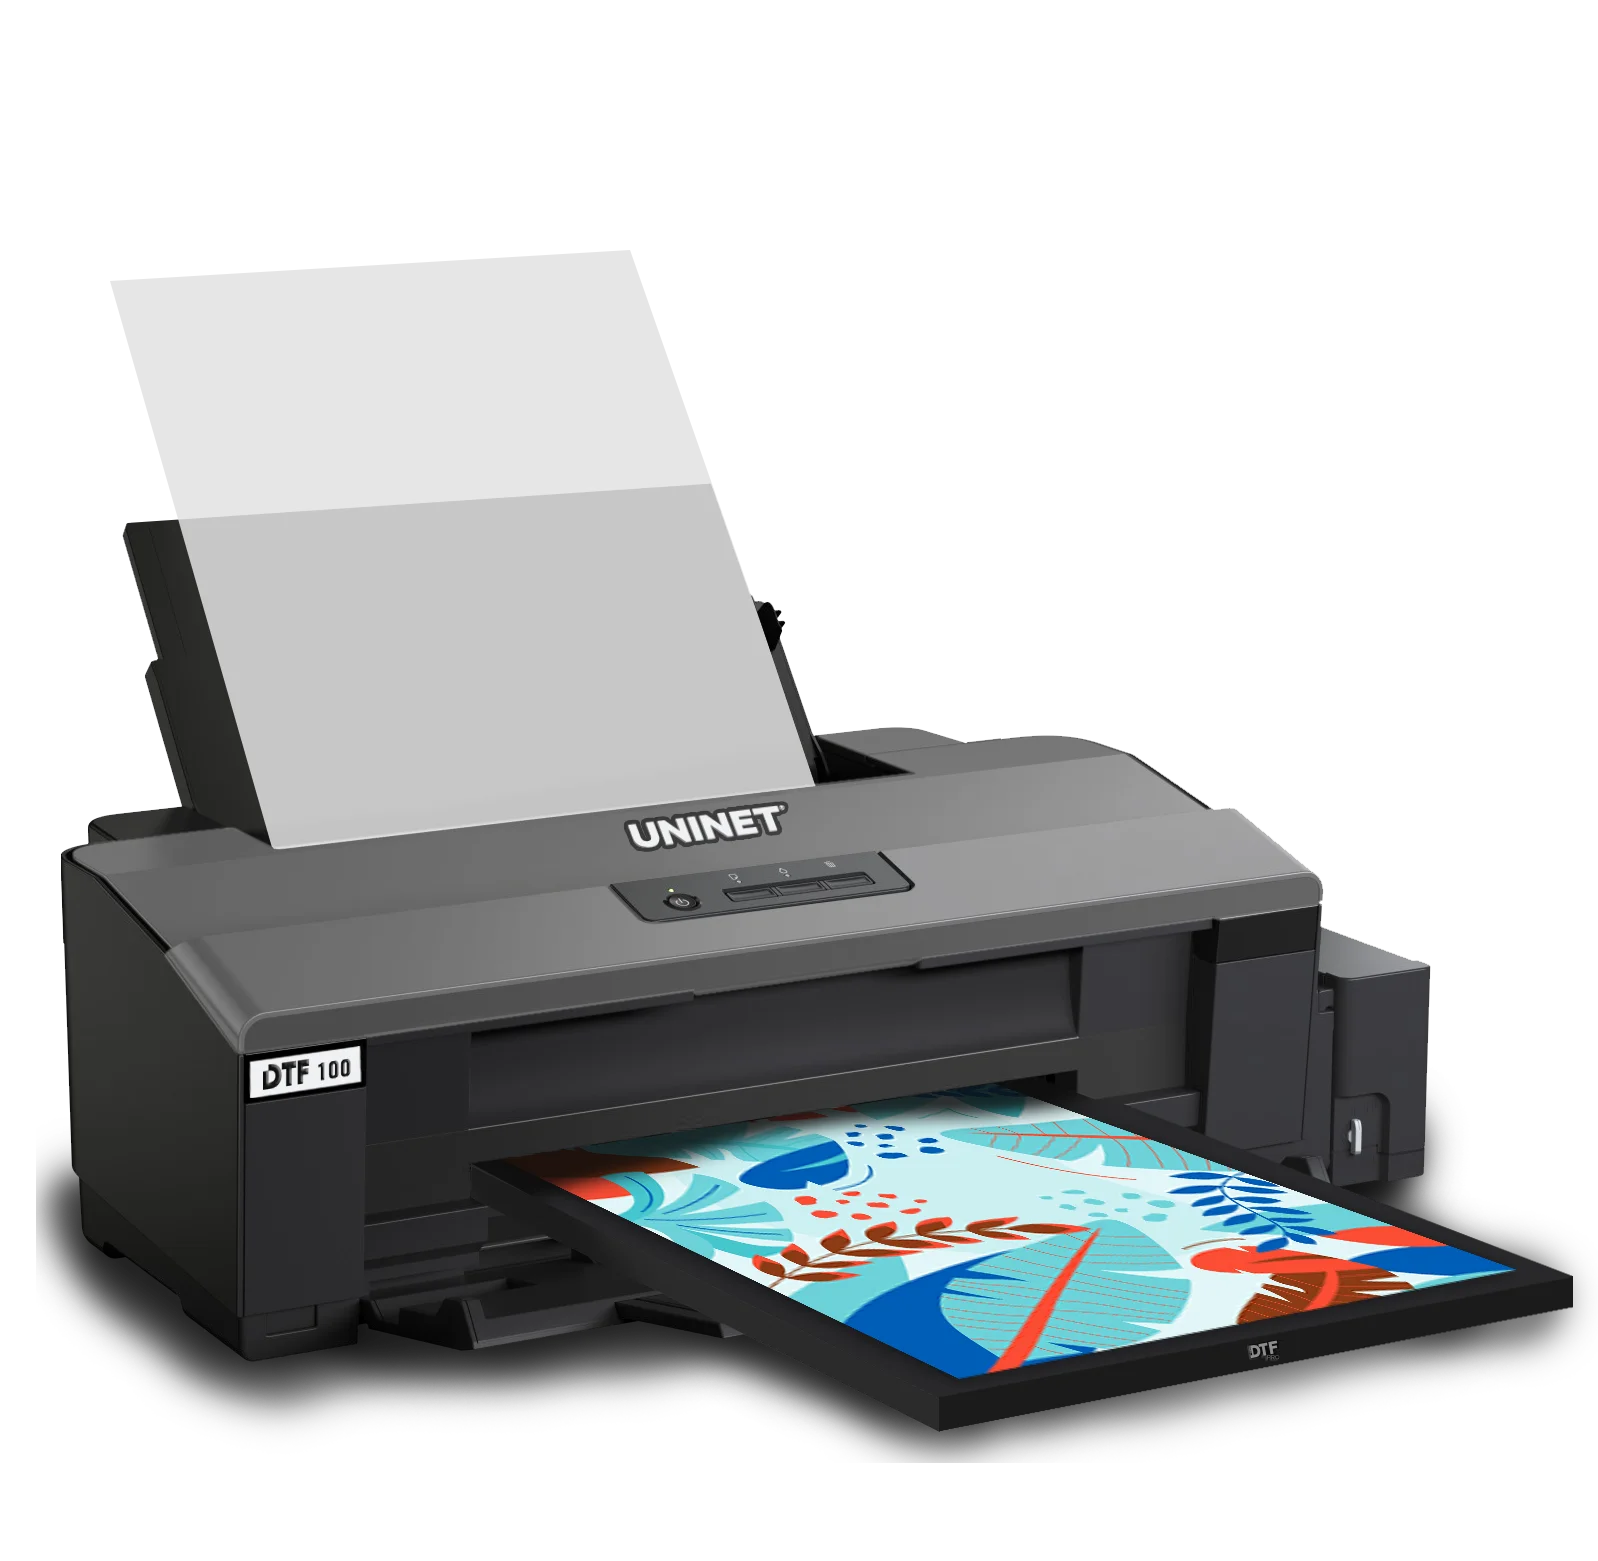 Uninet 100 DTF Printer (Includes Training, Starter Bundle, 1 Year